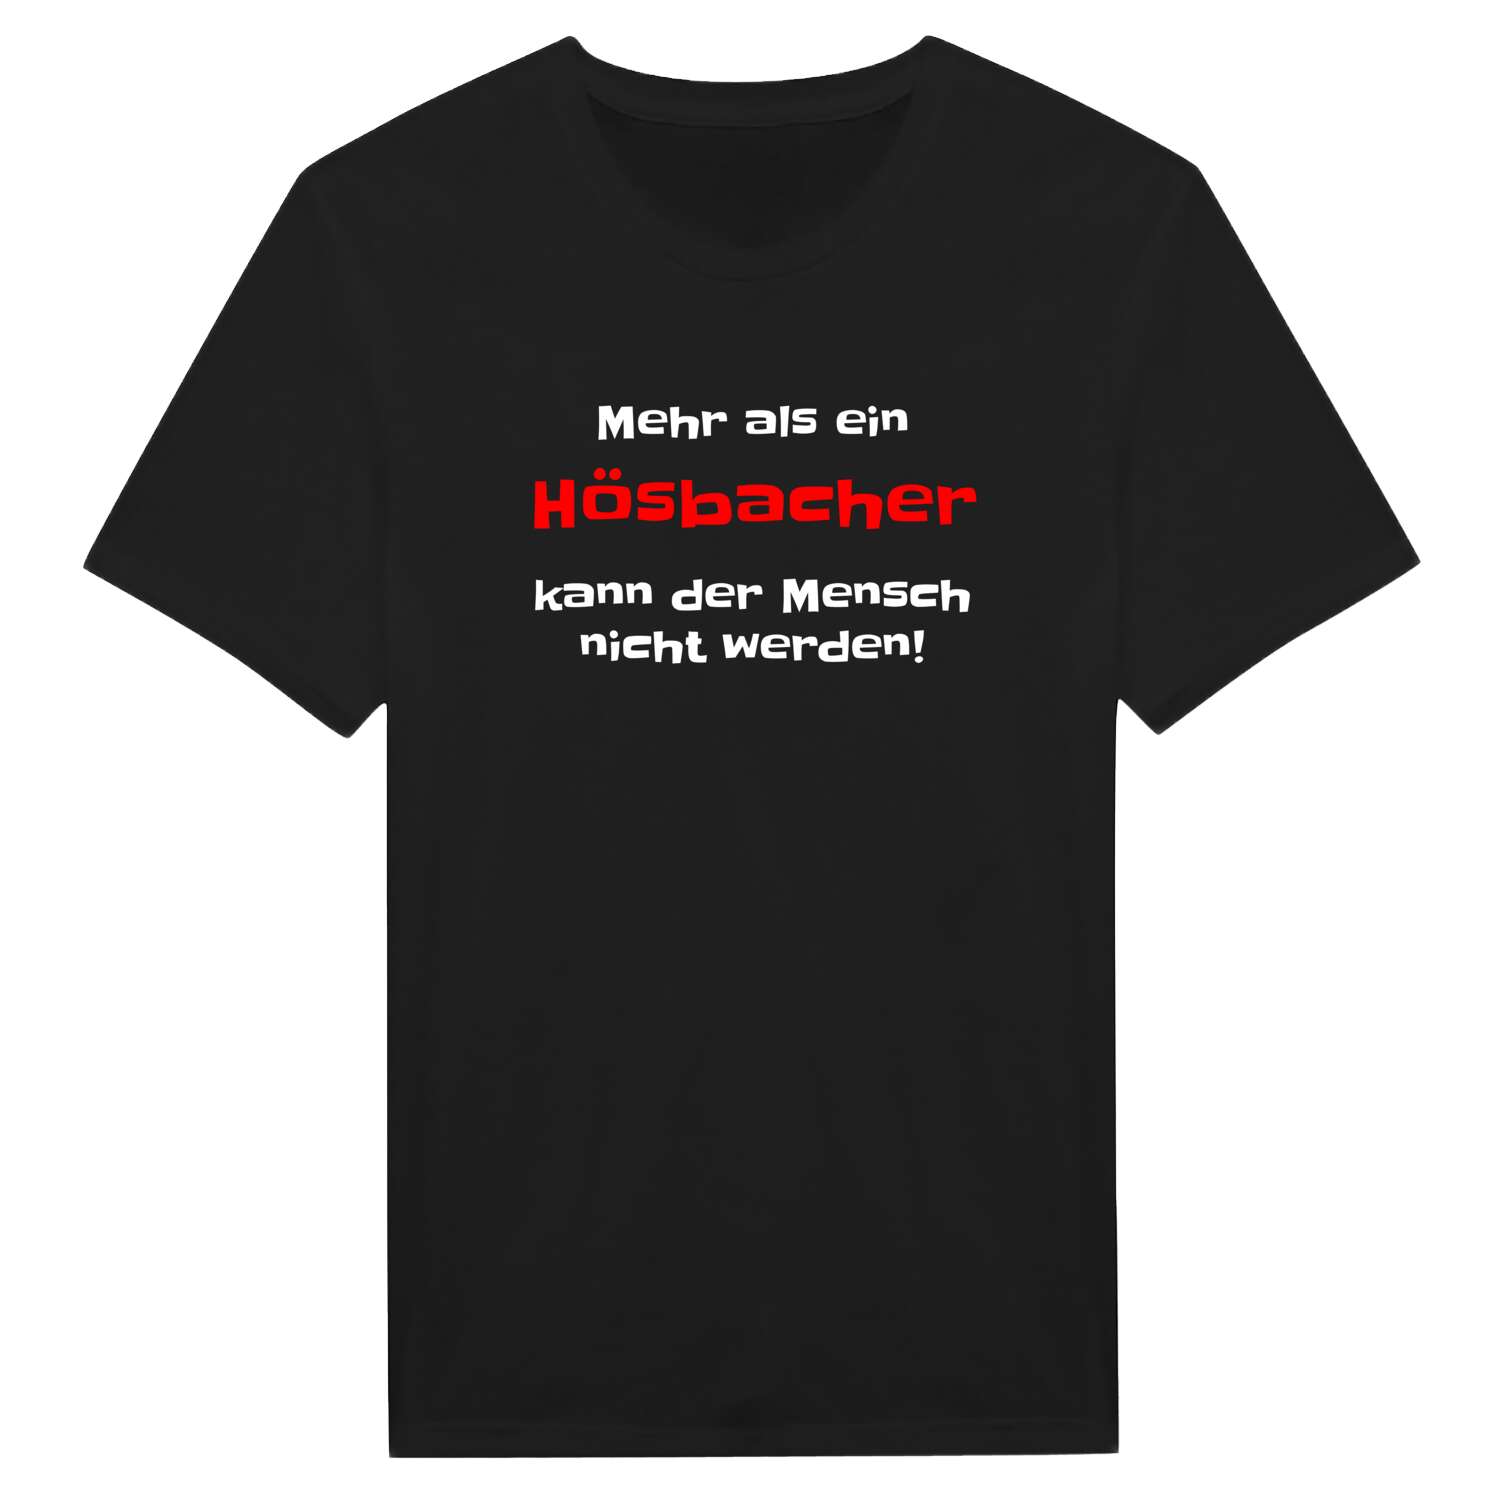 Hösbach T-Shirt »Mehr als ein«